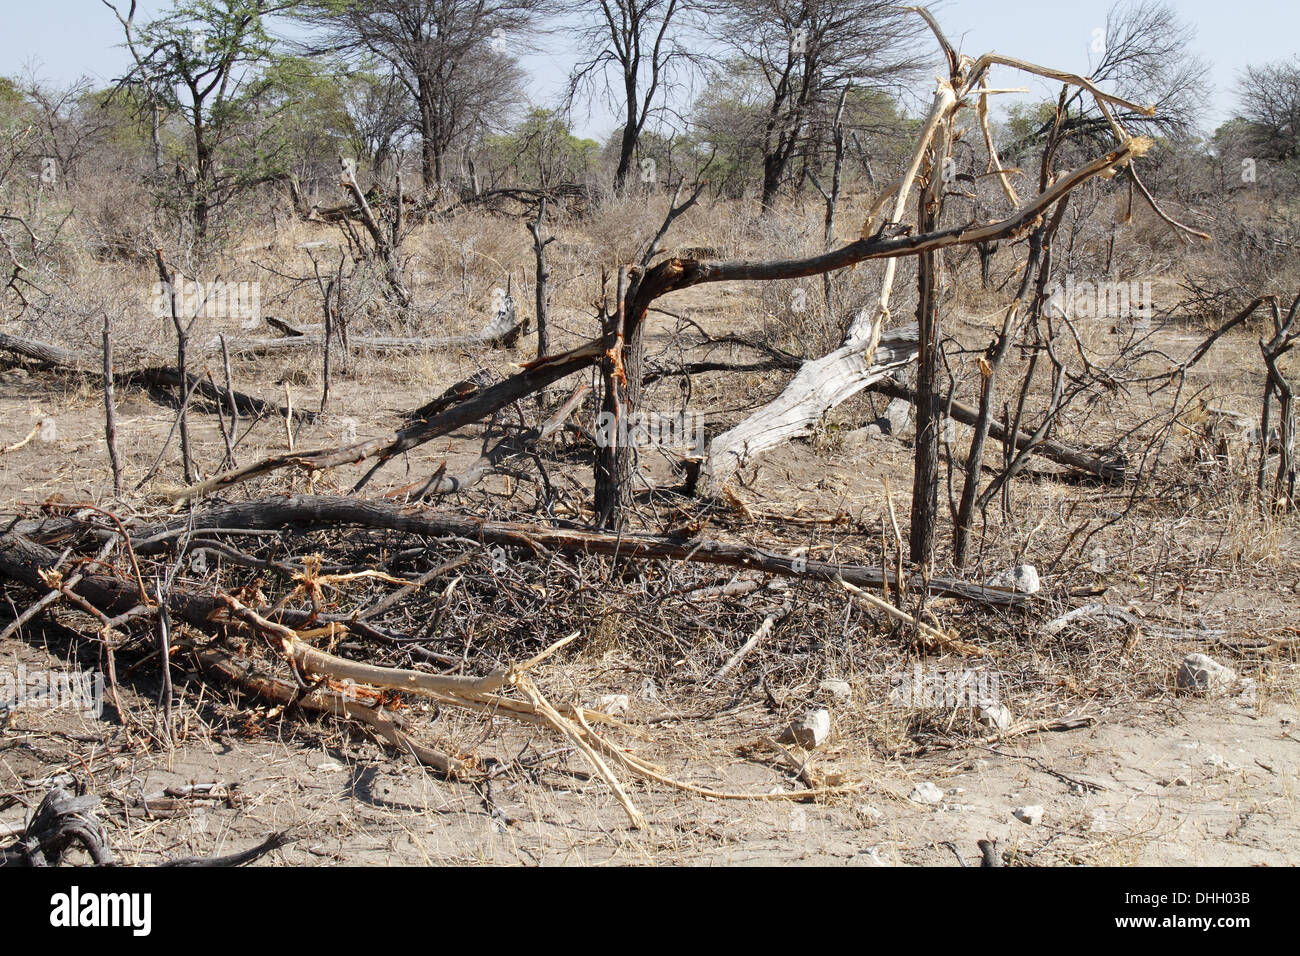 Les dommages aux arbres causés par les éléphants en Afrique Banque D'Images